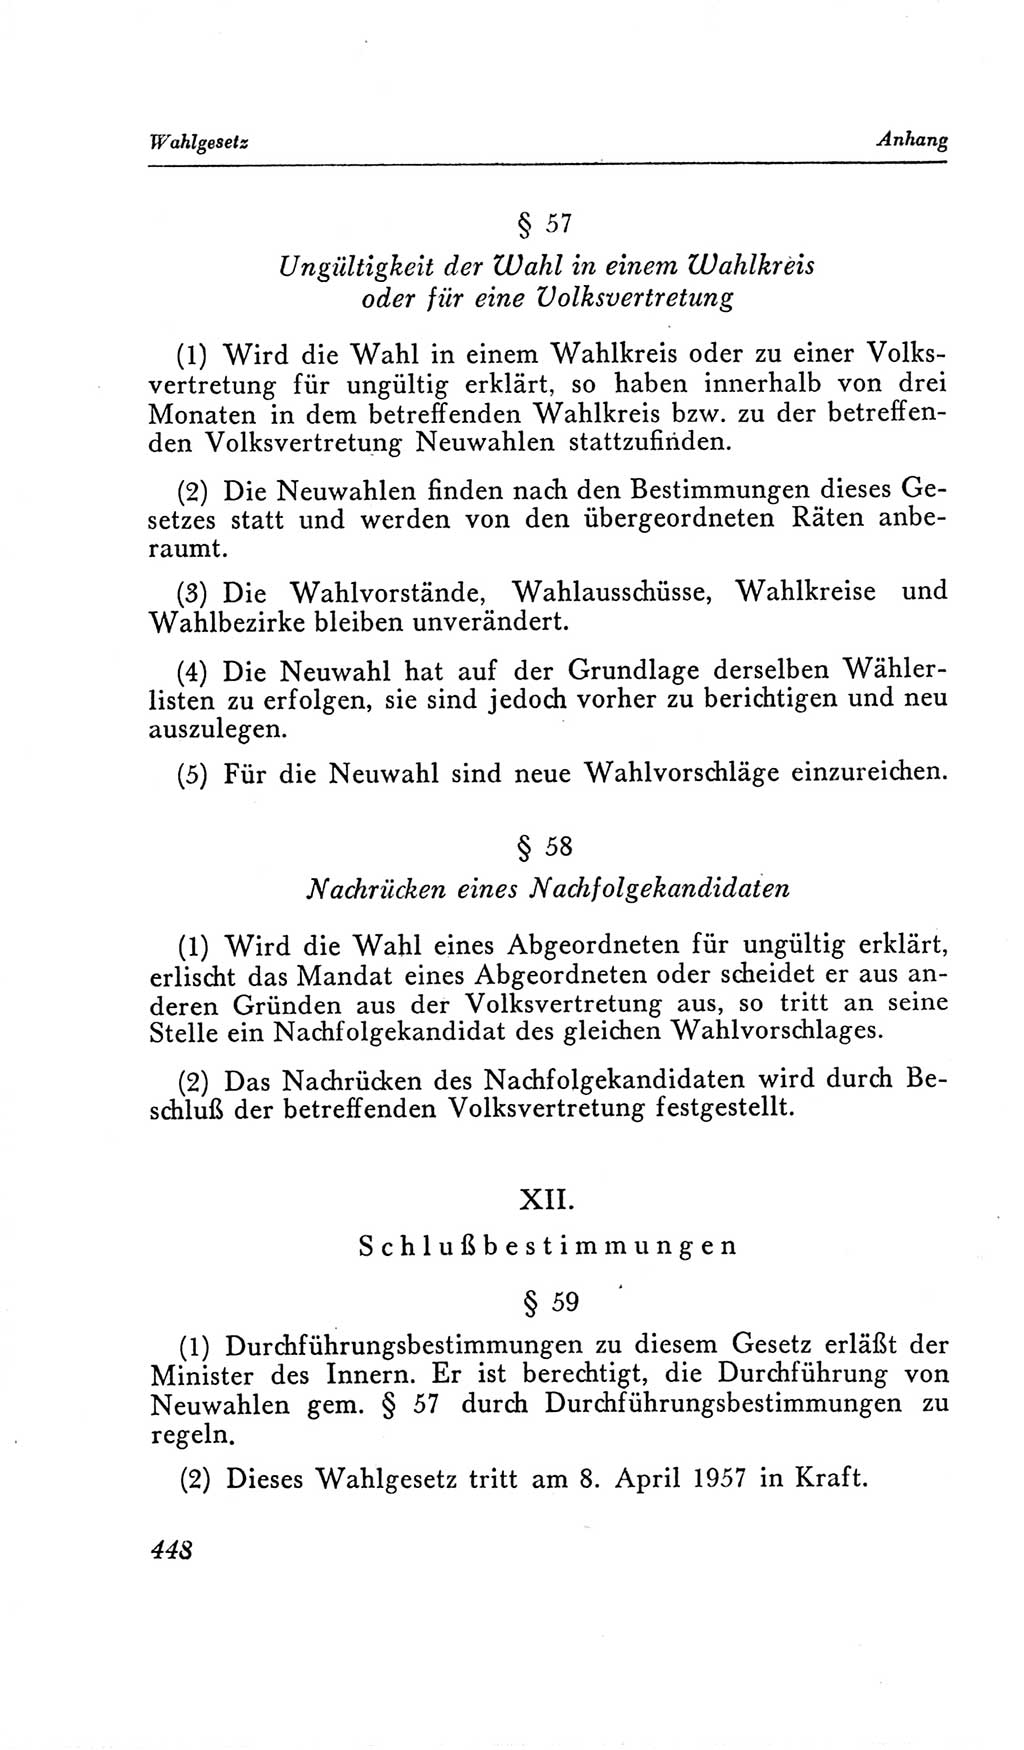 Handbuch der Volkskammer (VK) der Deutschen Demokratischen Republik (DDR), 2. Wahlperiode 1954-1958, Seite 448 (Hdb. VK. DDR, 2. WP. 1954-1958, S. 448)